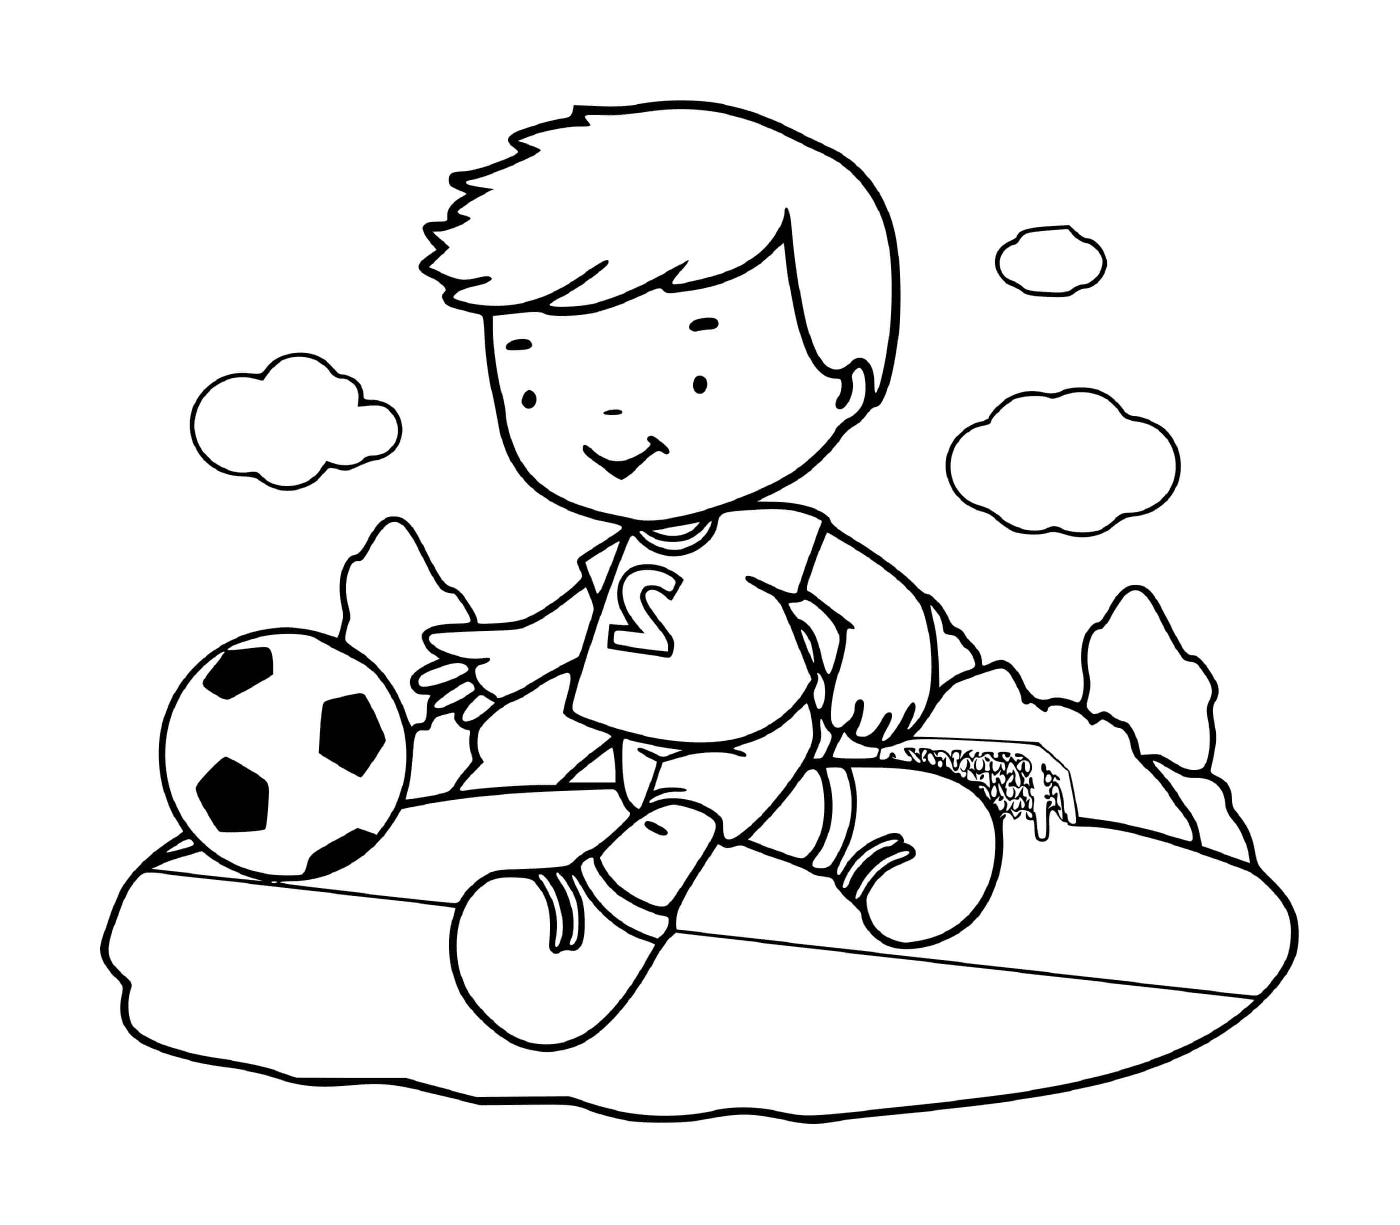  एक लड़का फुटबॉल जोश के साथ खेलता है 